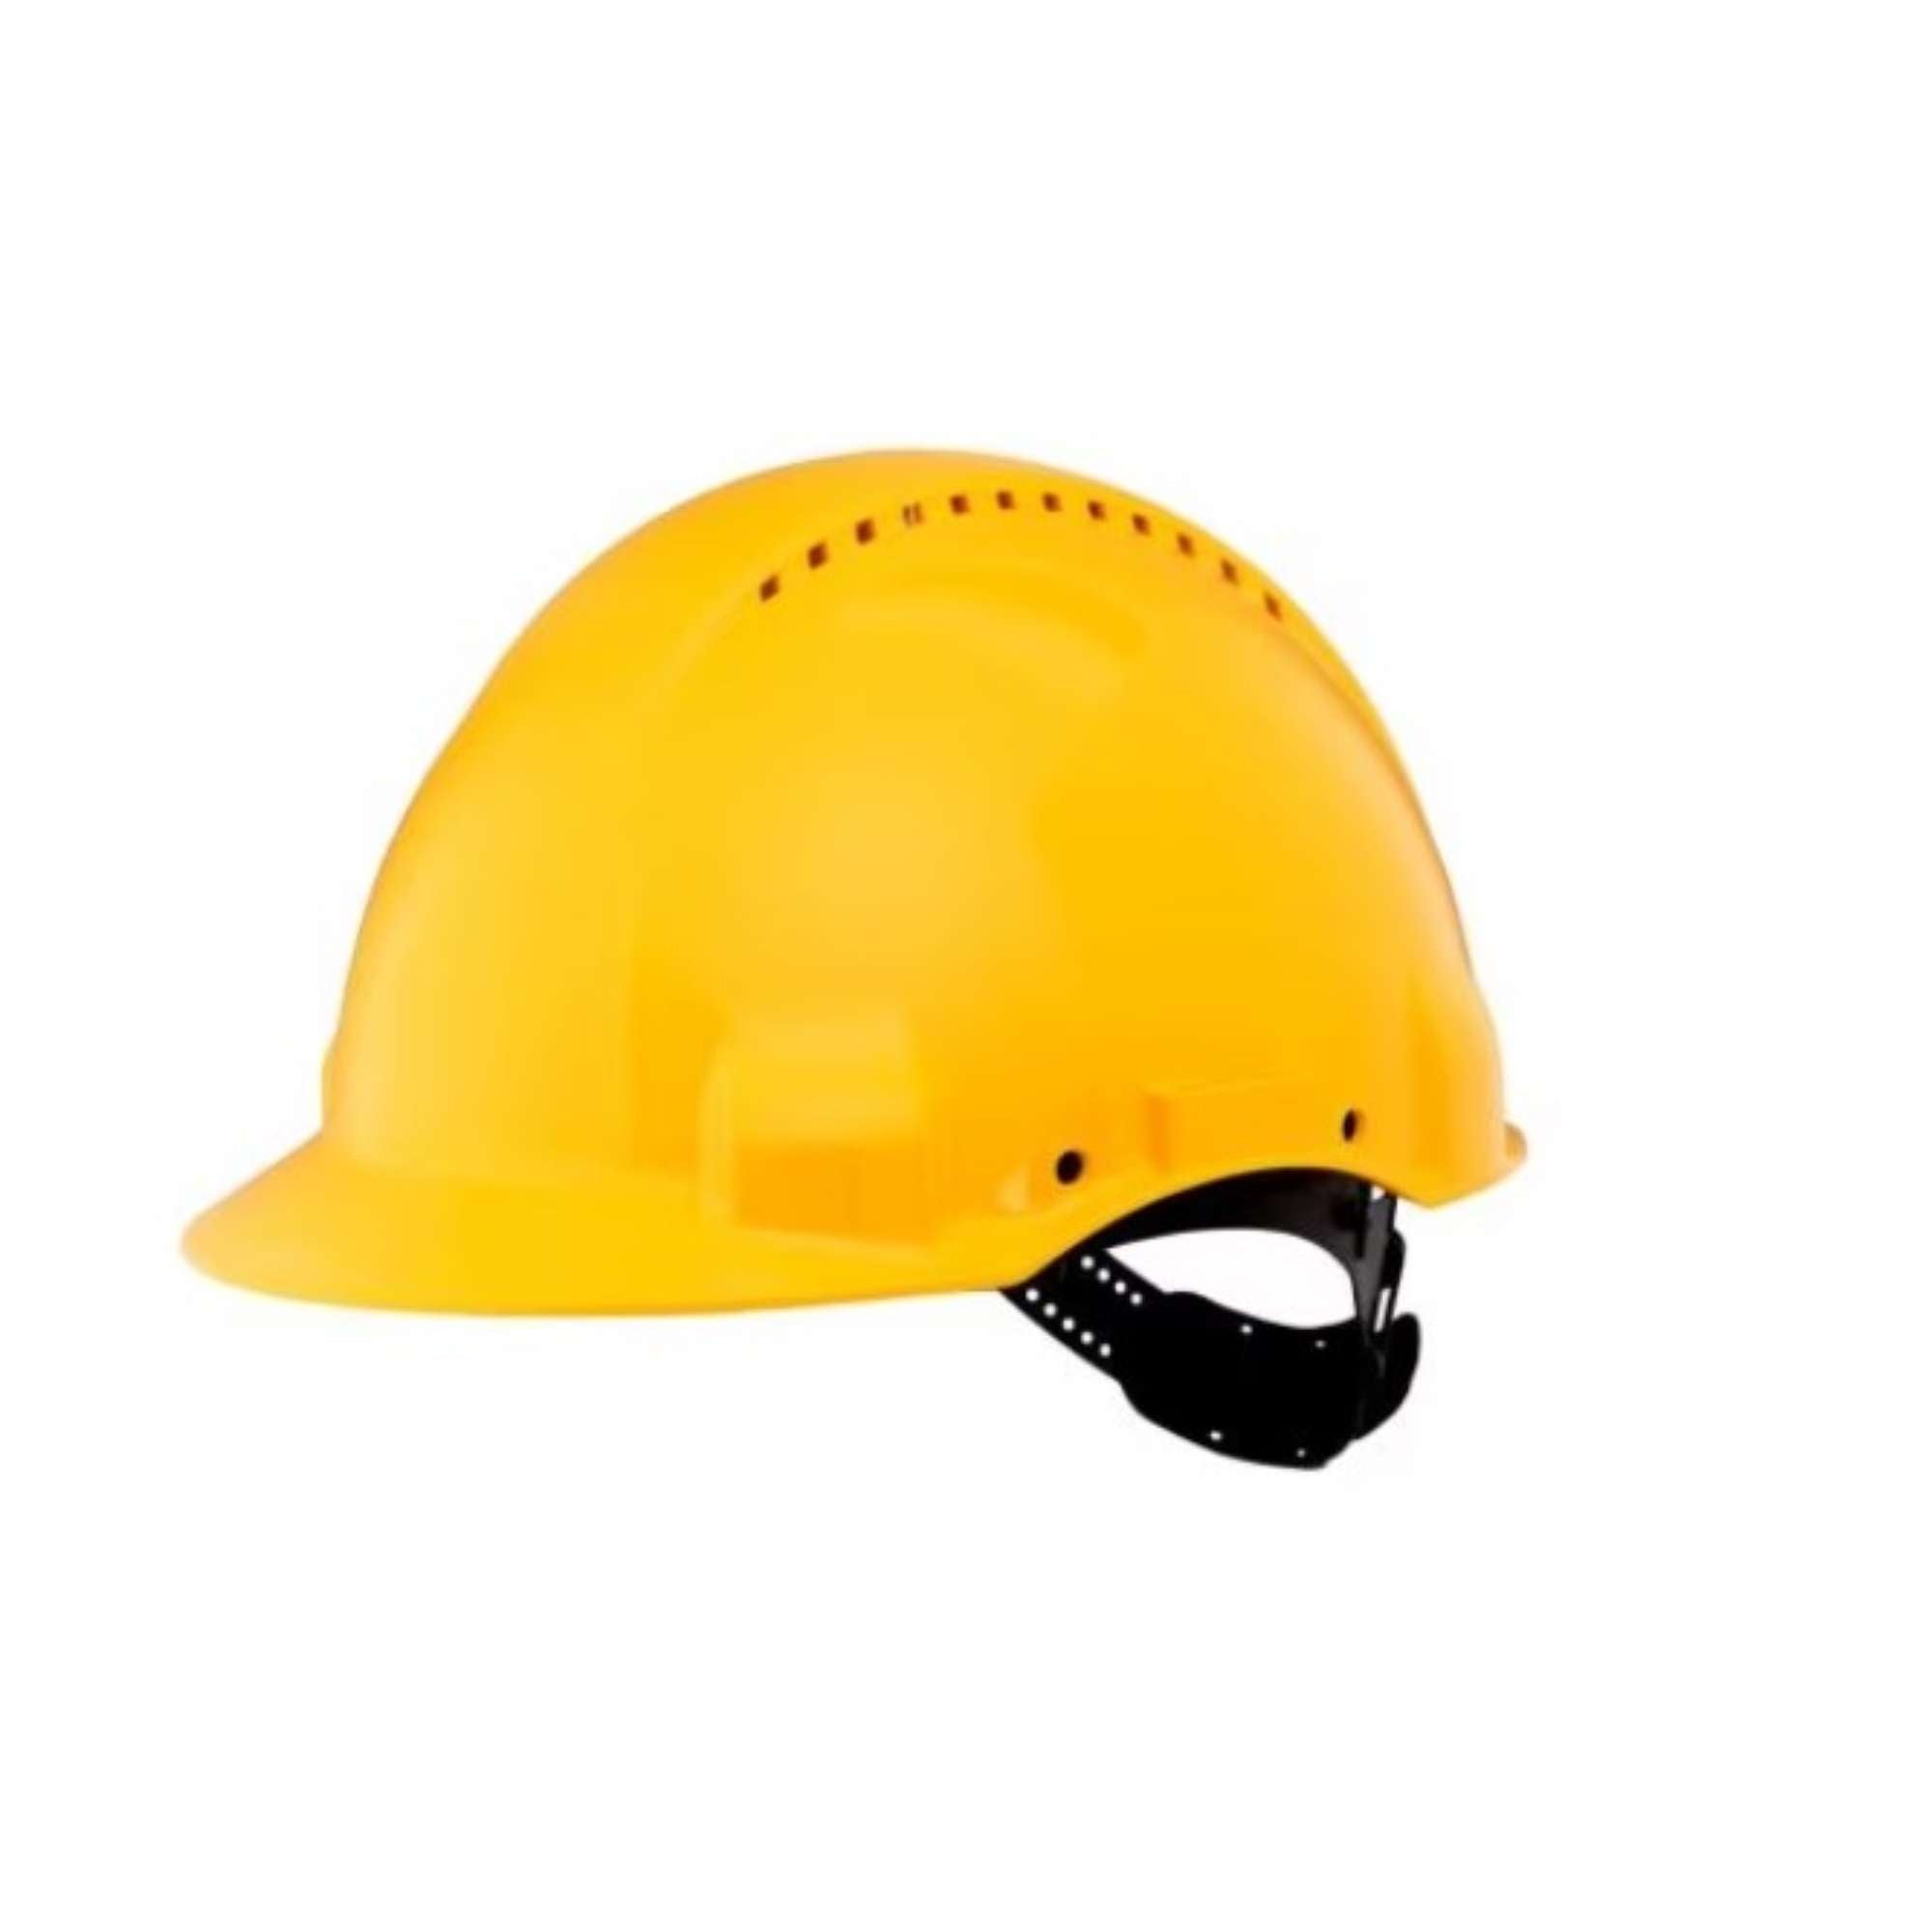 Peltor helmet G3000 yellow - 3M 7100002023